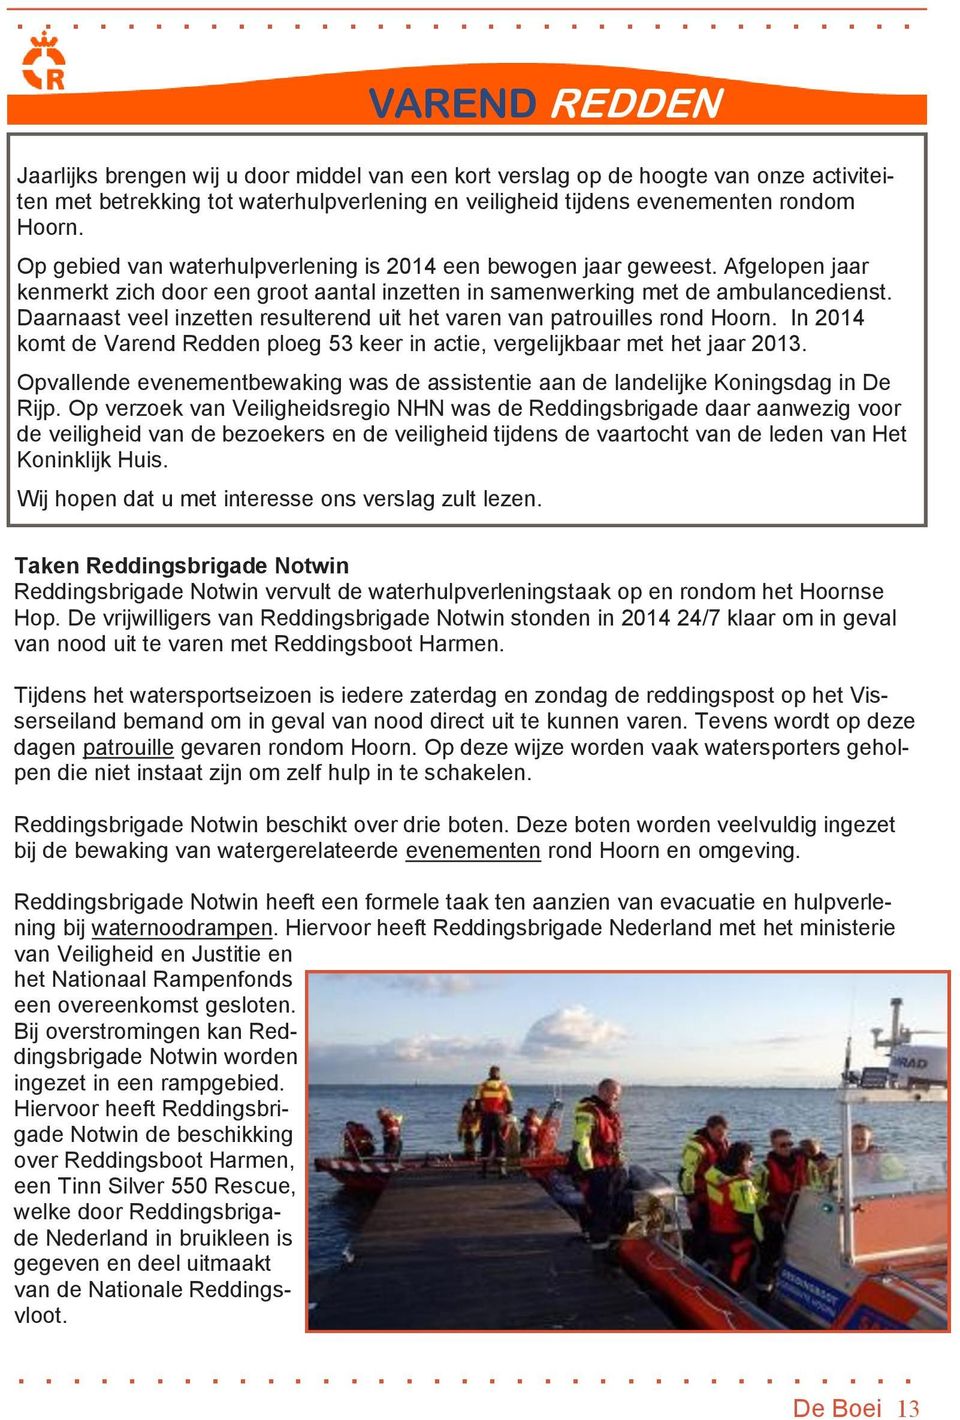 Daarnaast veel inzetten resulterend uit het varen van patrouilles rond Hoorn. In 2014 komt de Varend Redden ploeg 53 keer in actie, vergelijkbaar met het jaar 2013.